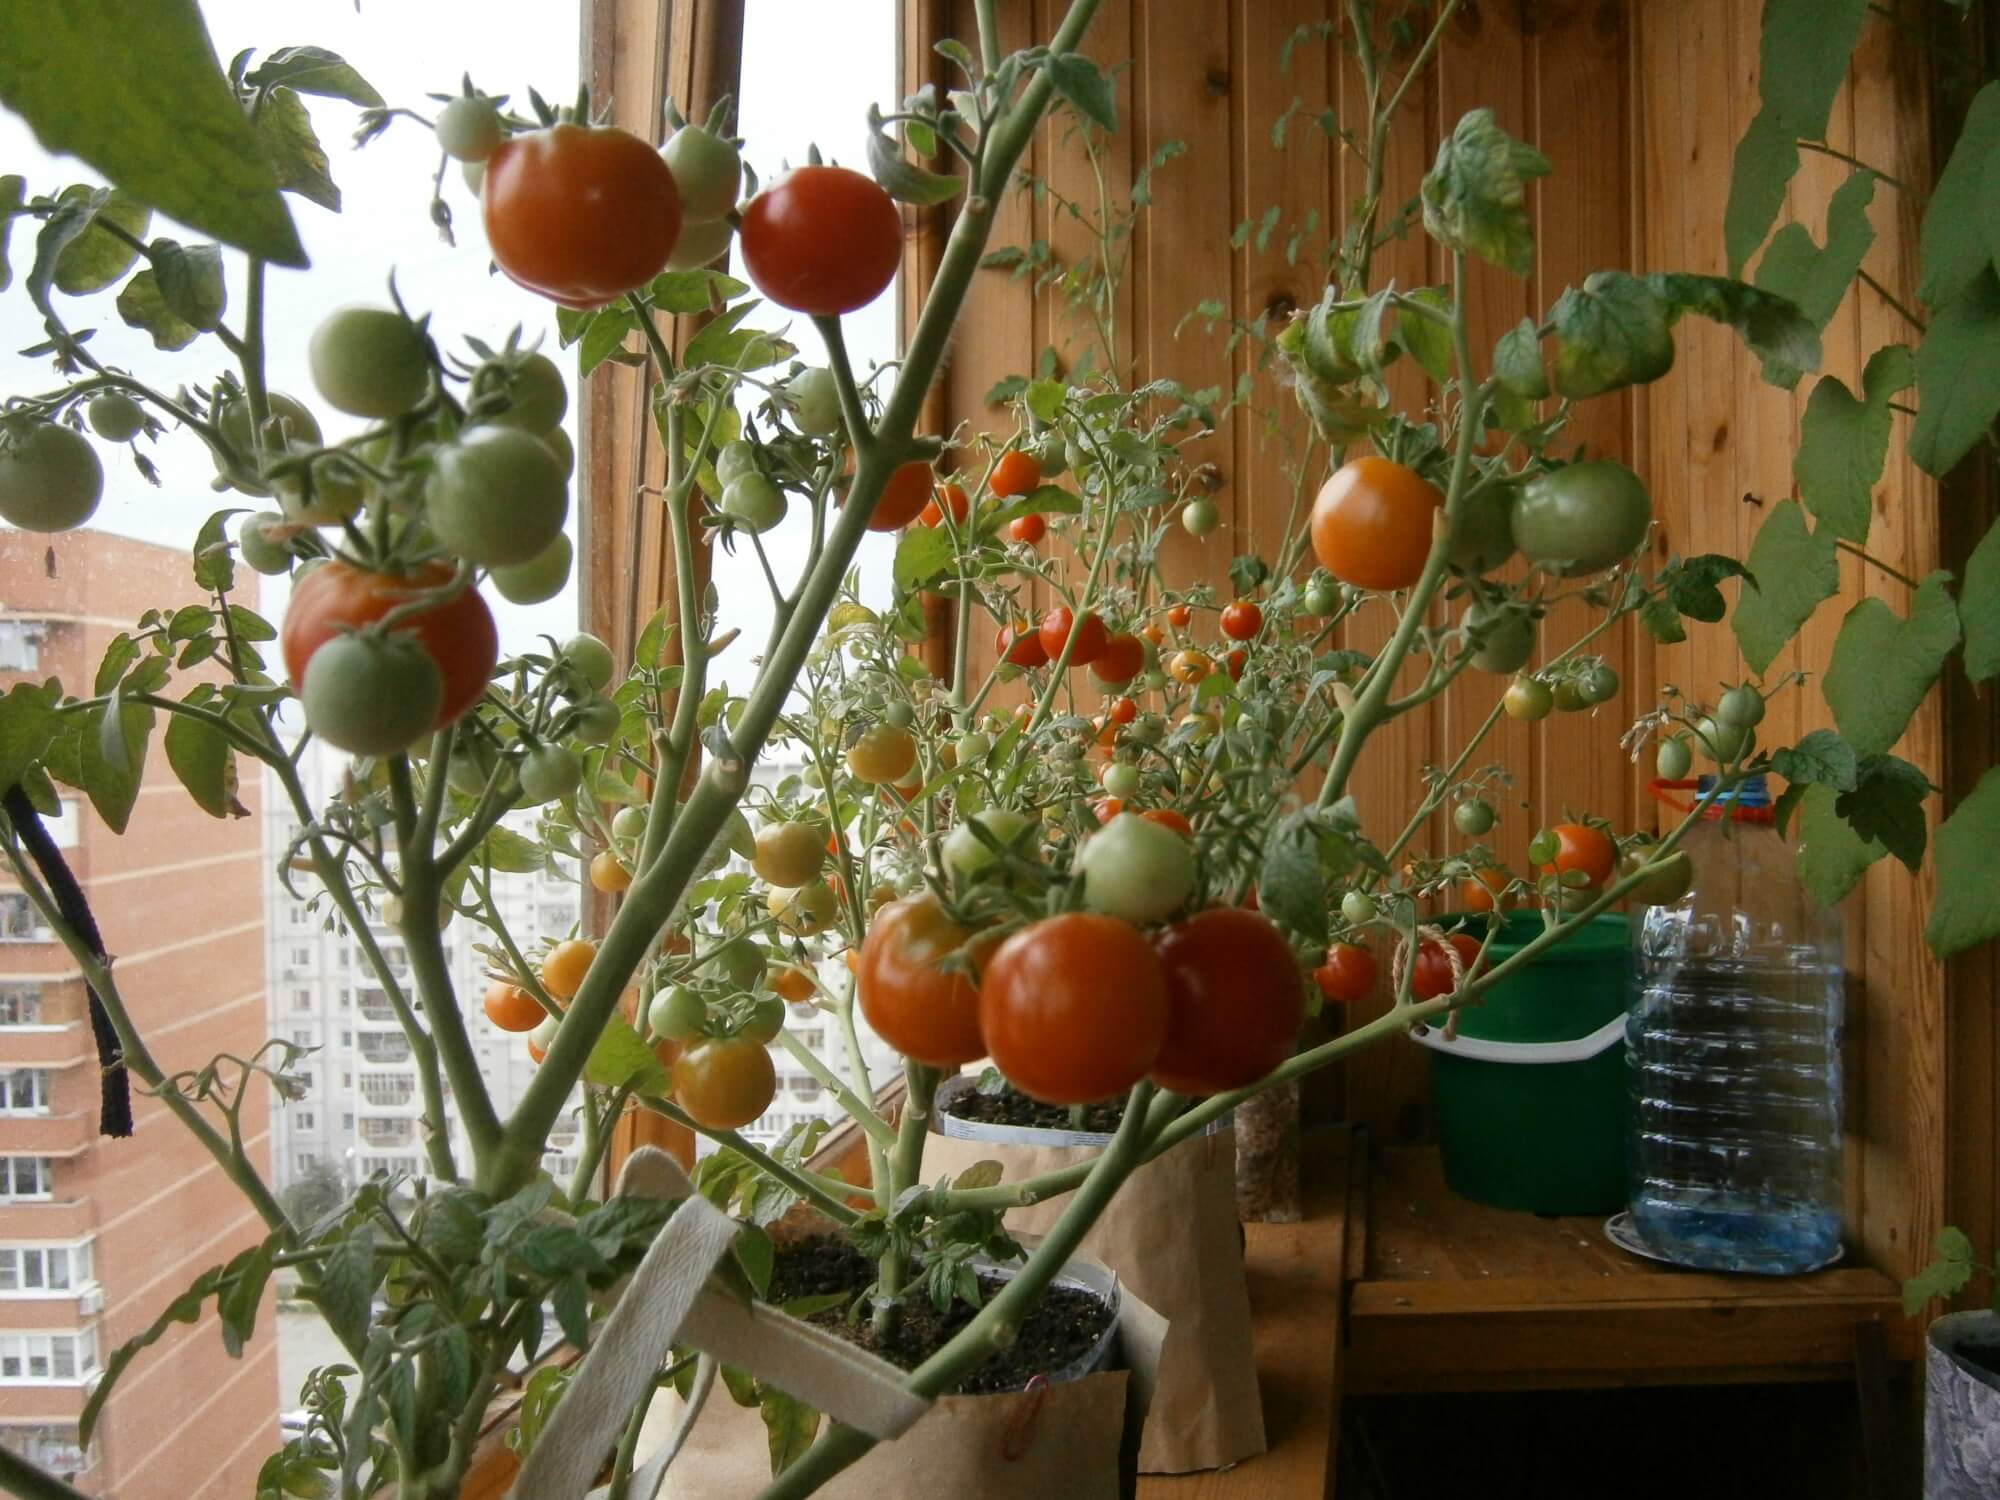 Ампельные томаты: сорта, особенности выращивания